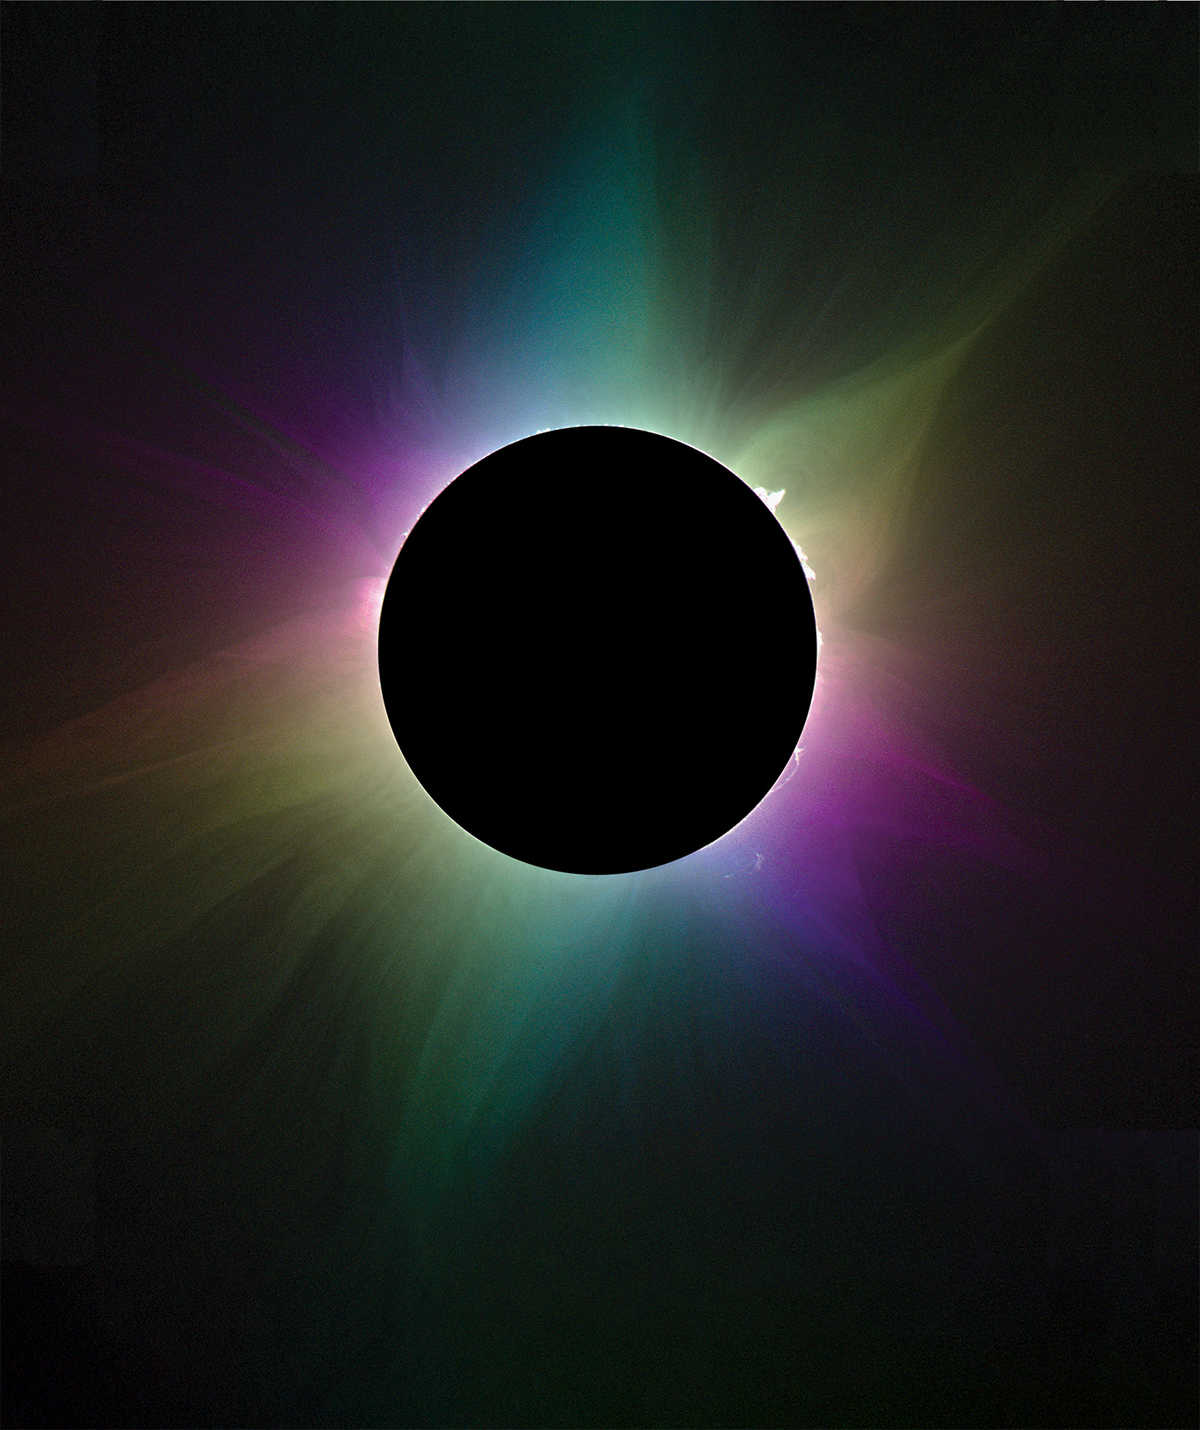 Sun's corona during total solar eclipse through special camera